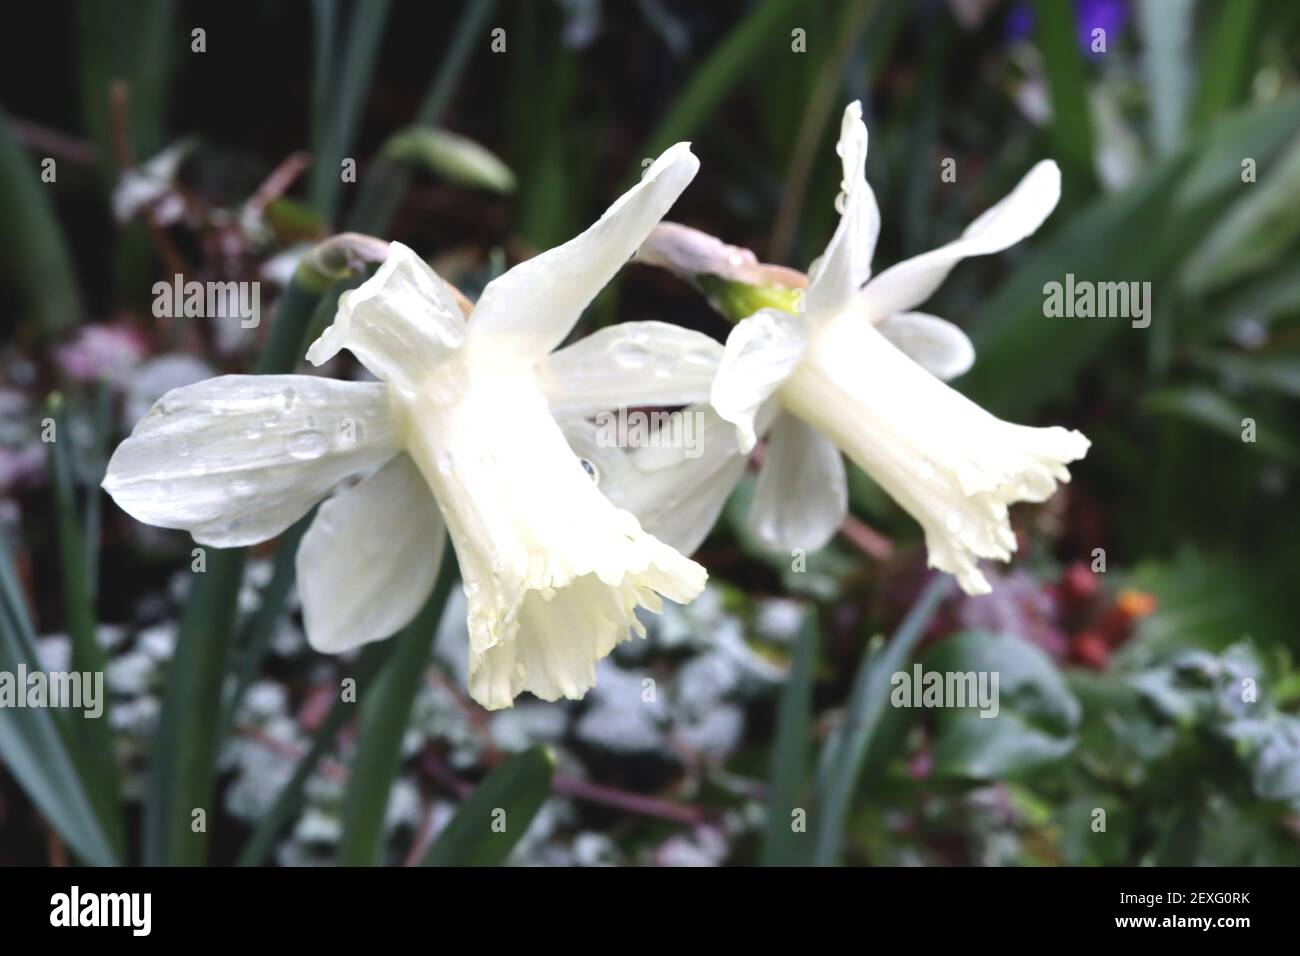 Narcissus «Beersheba» Division 1 jonquilles en trompette Beersheba jondil – pétales blancs et longue coupe crémeuse à volants blancs, mars, Angleterre, Royaume-Uni Banque D'Images